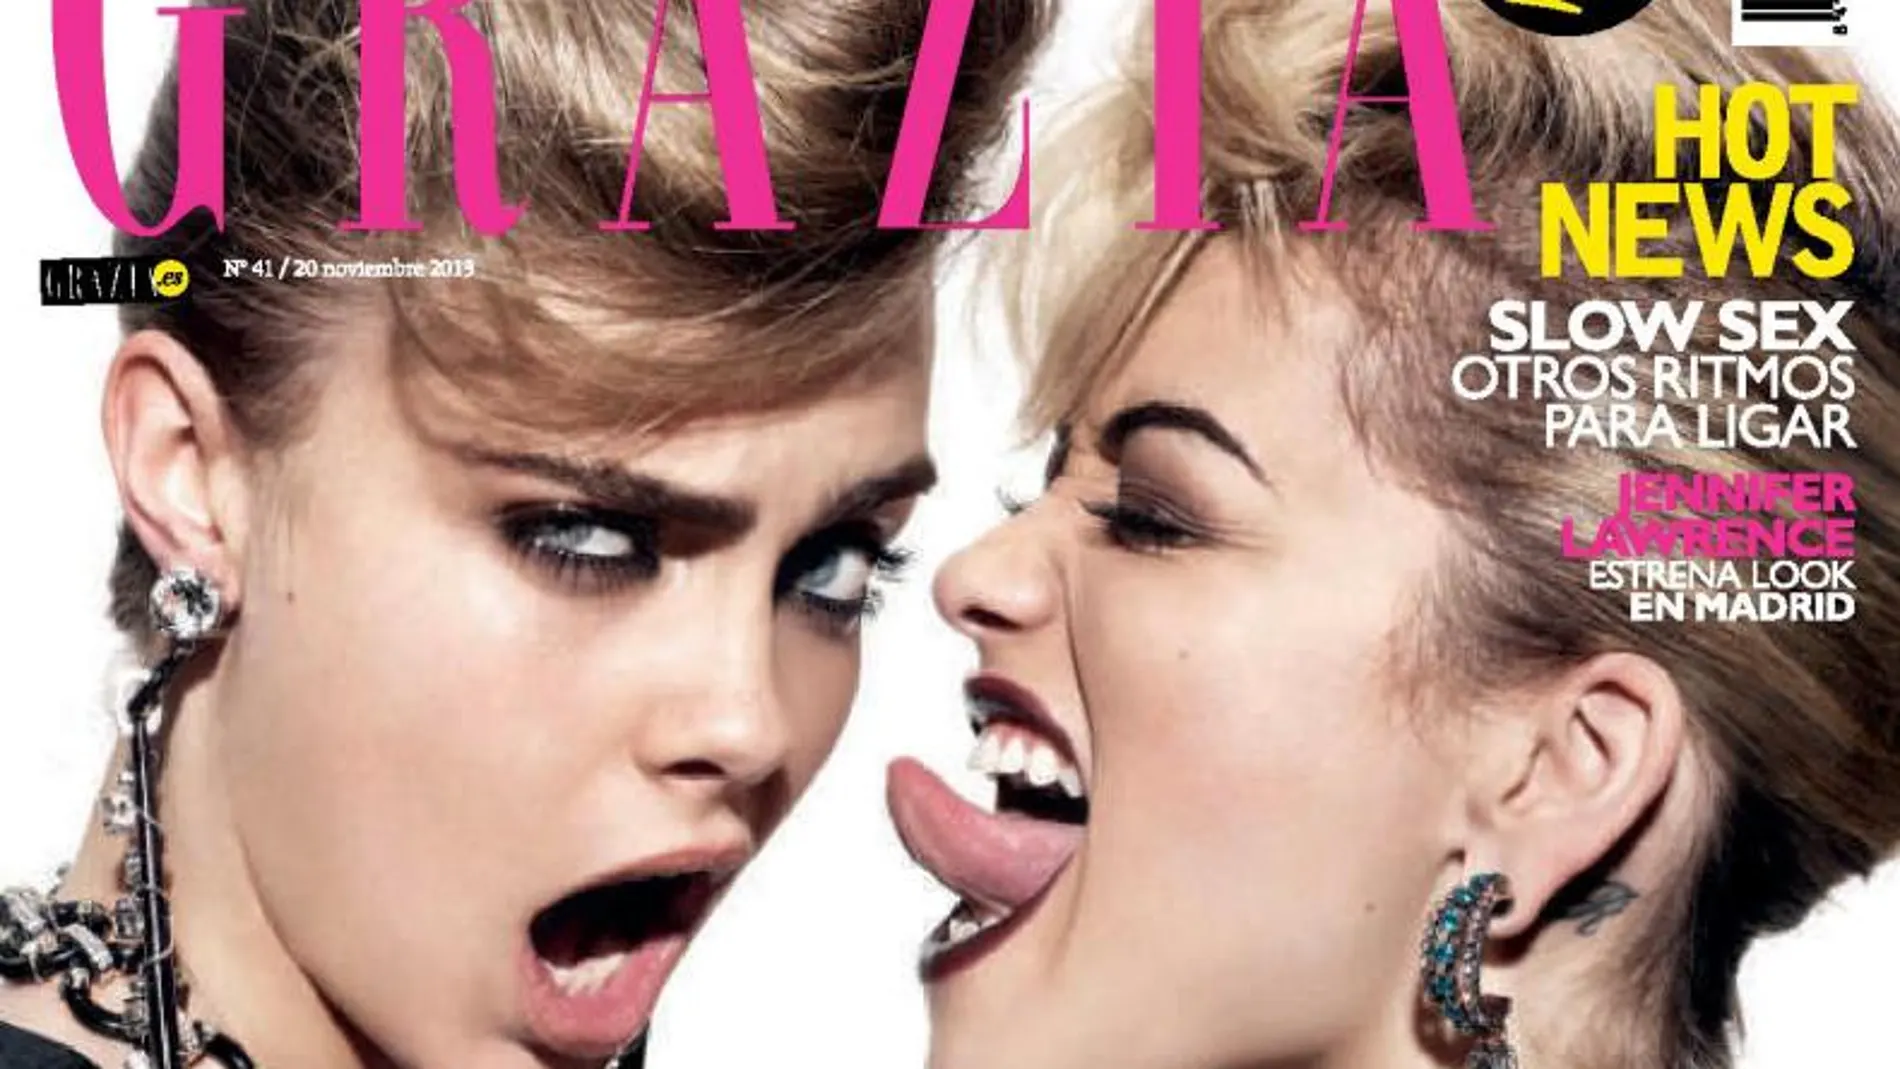 Cara y Rita, las BBF (Best Fashion Friends), en la portada de «Grazia»